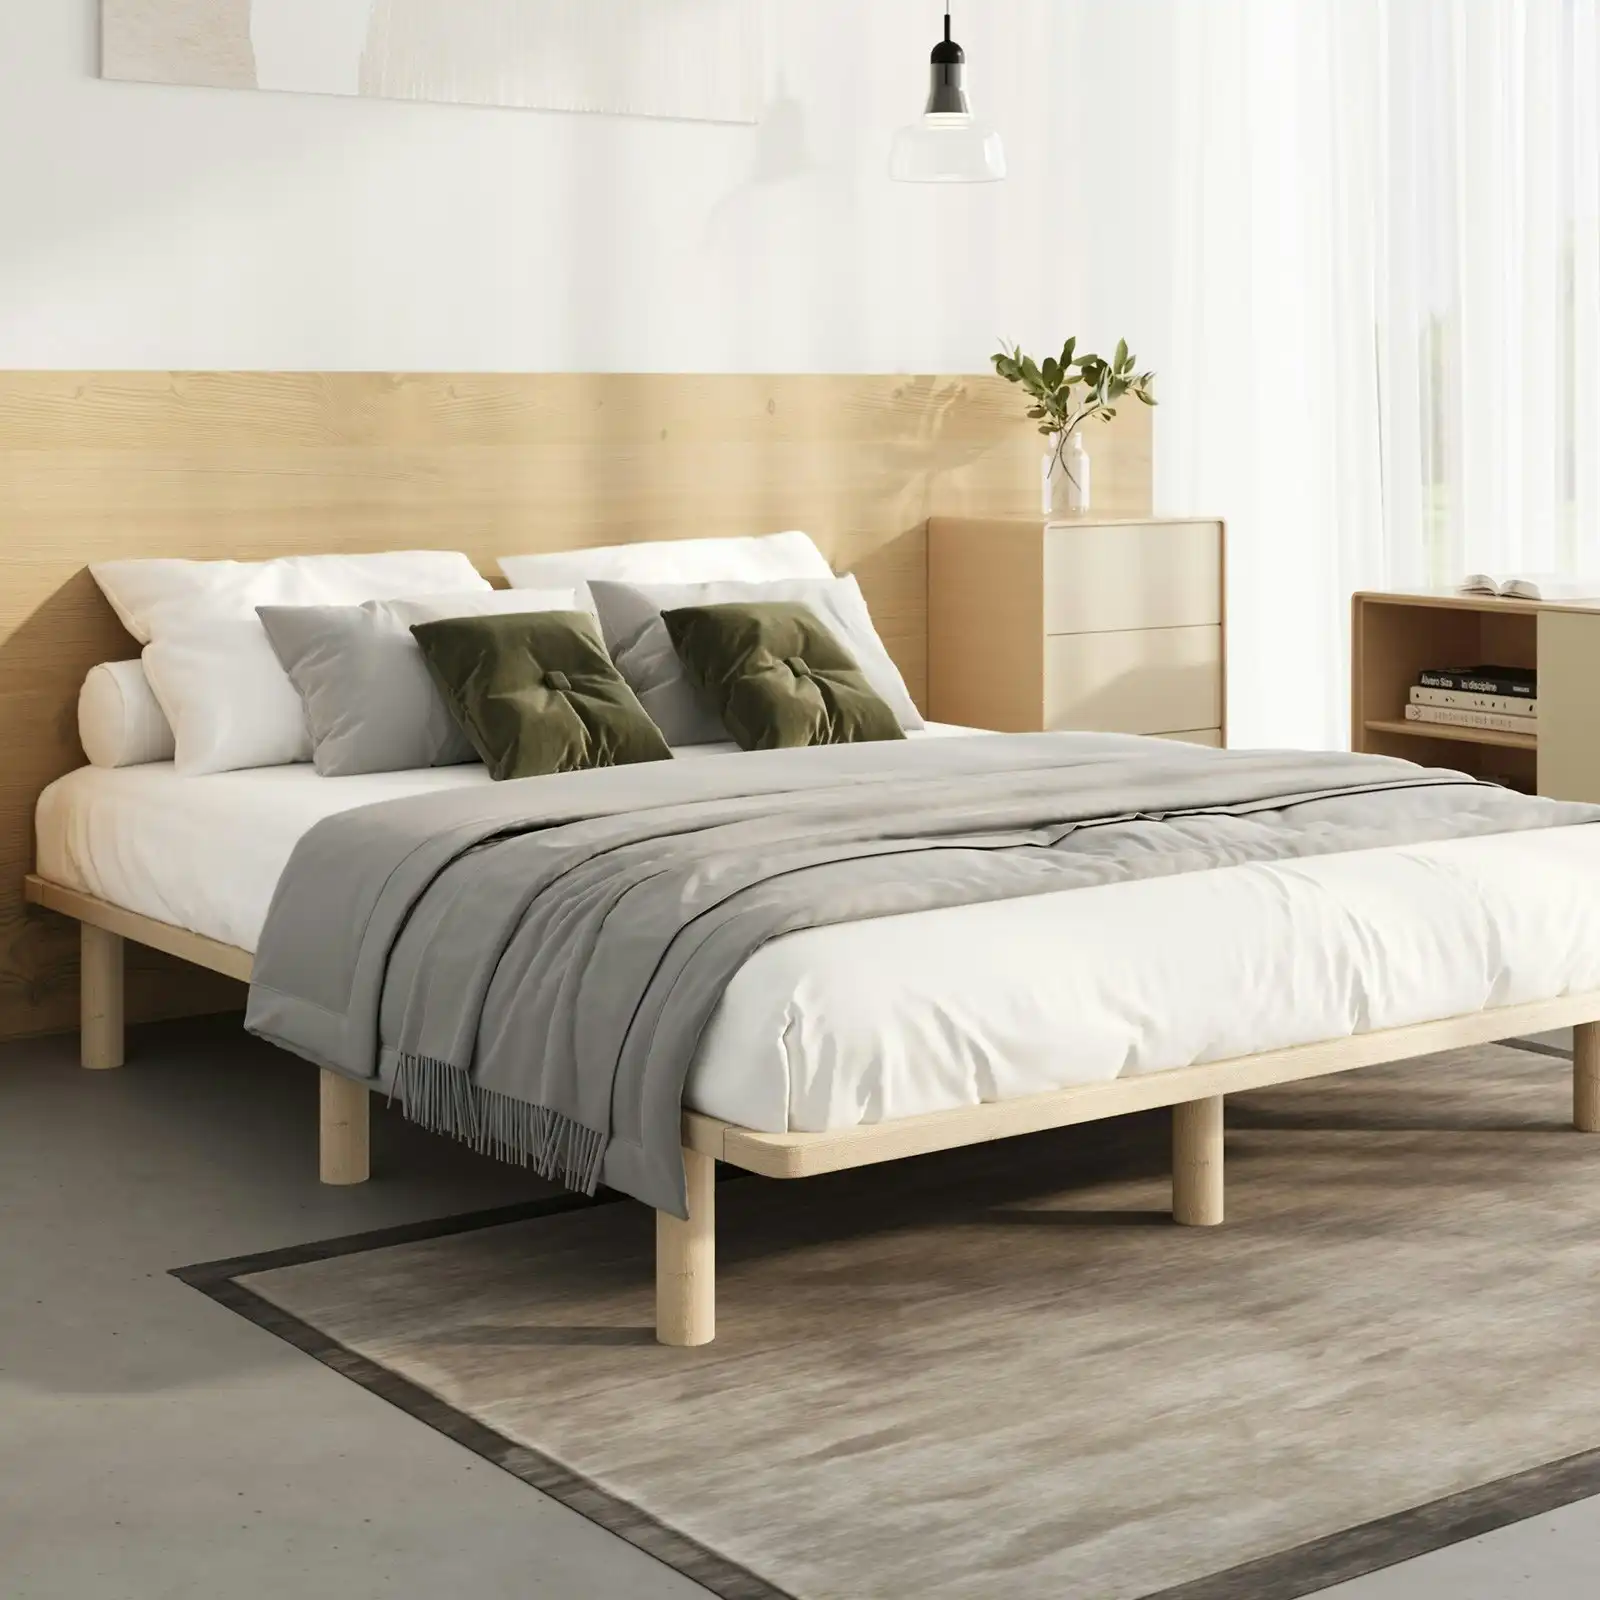 Oikiture Bed Frame King Single Wooden Bed Base Platform Timber